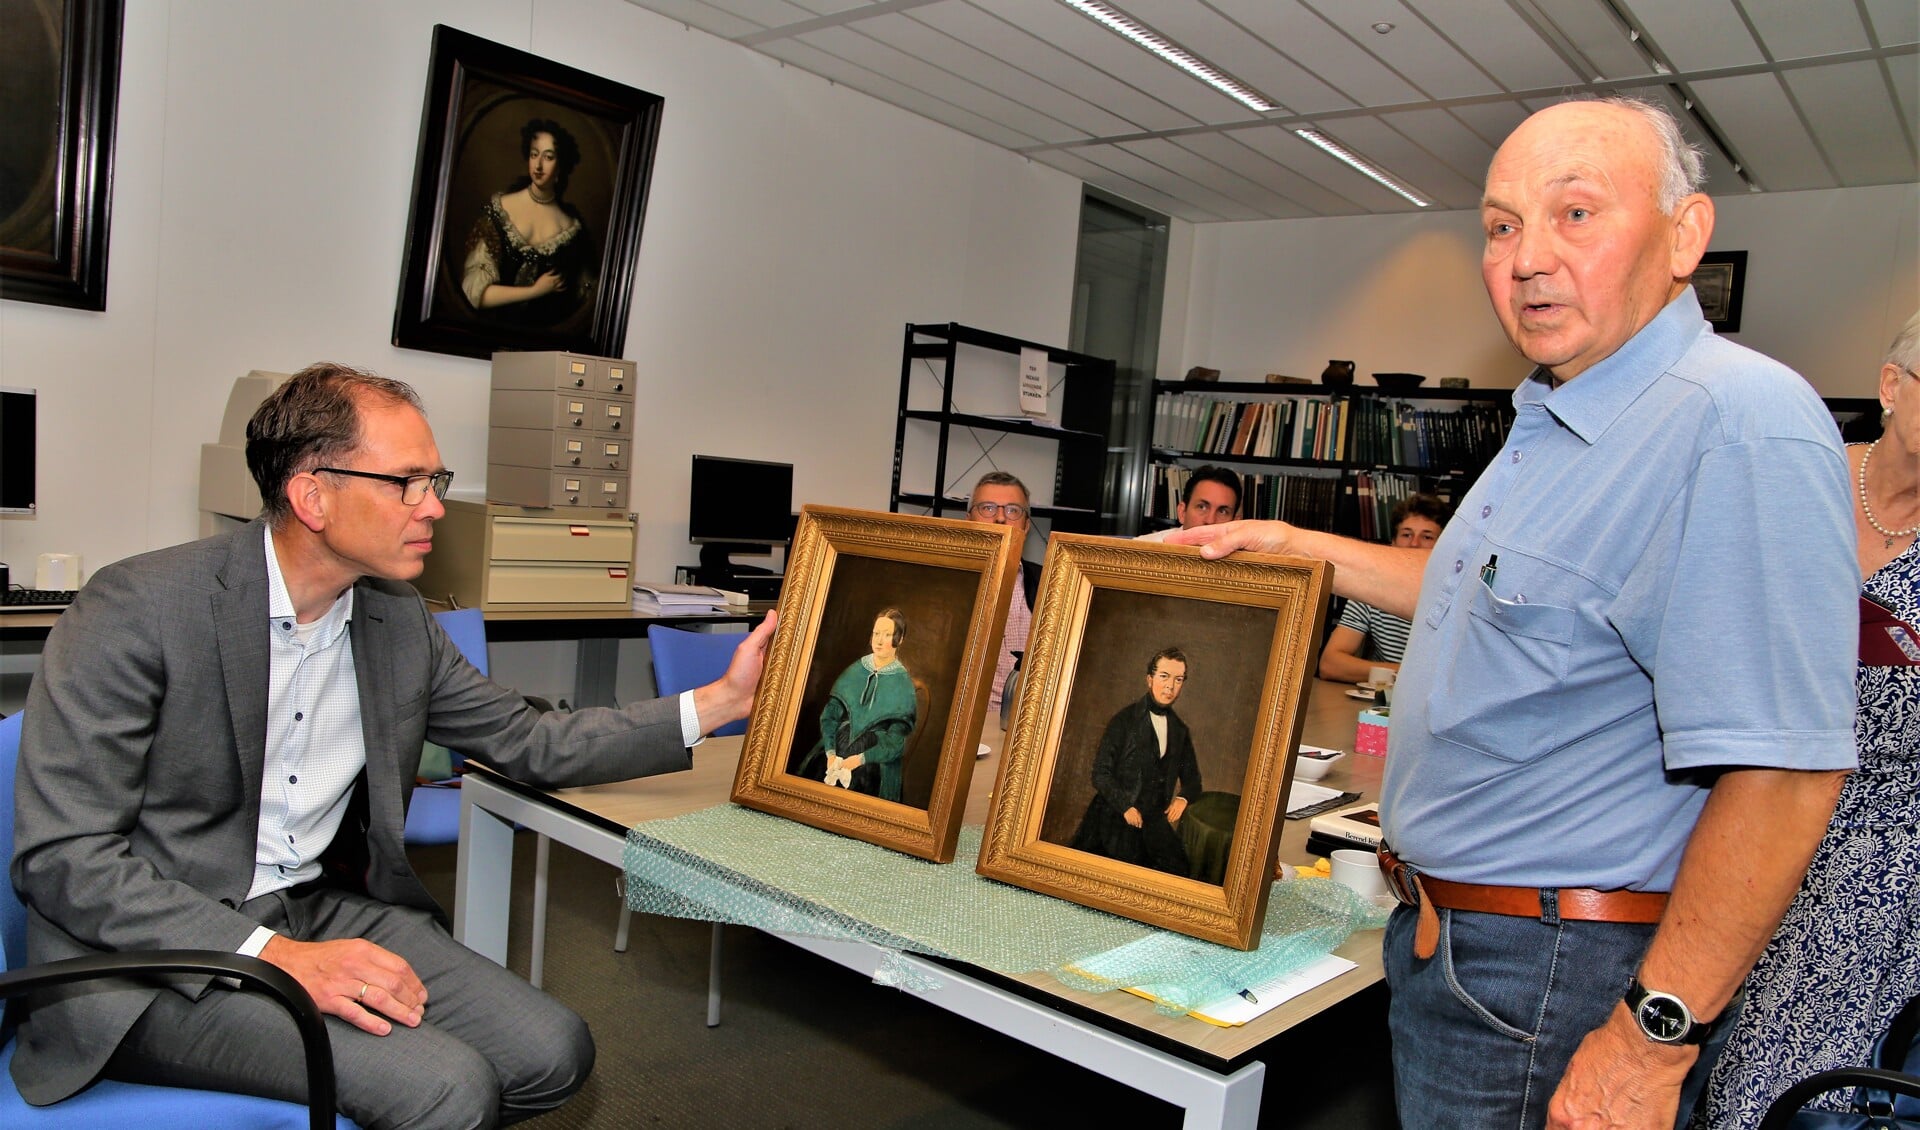 Doeleman overhandigt de portretten aan wethouder Hoek.